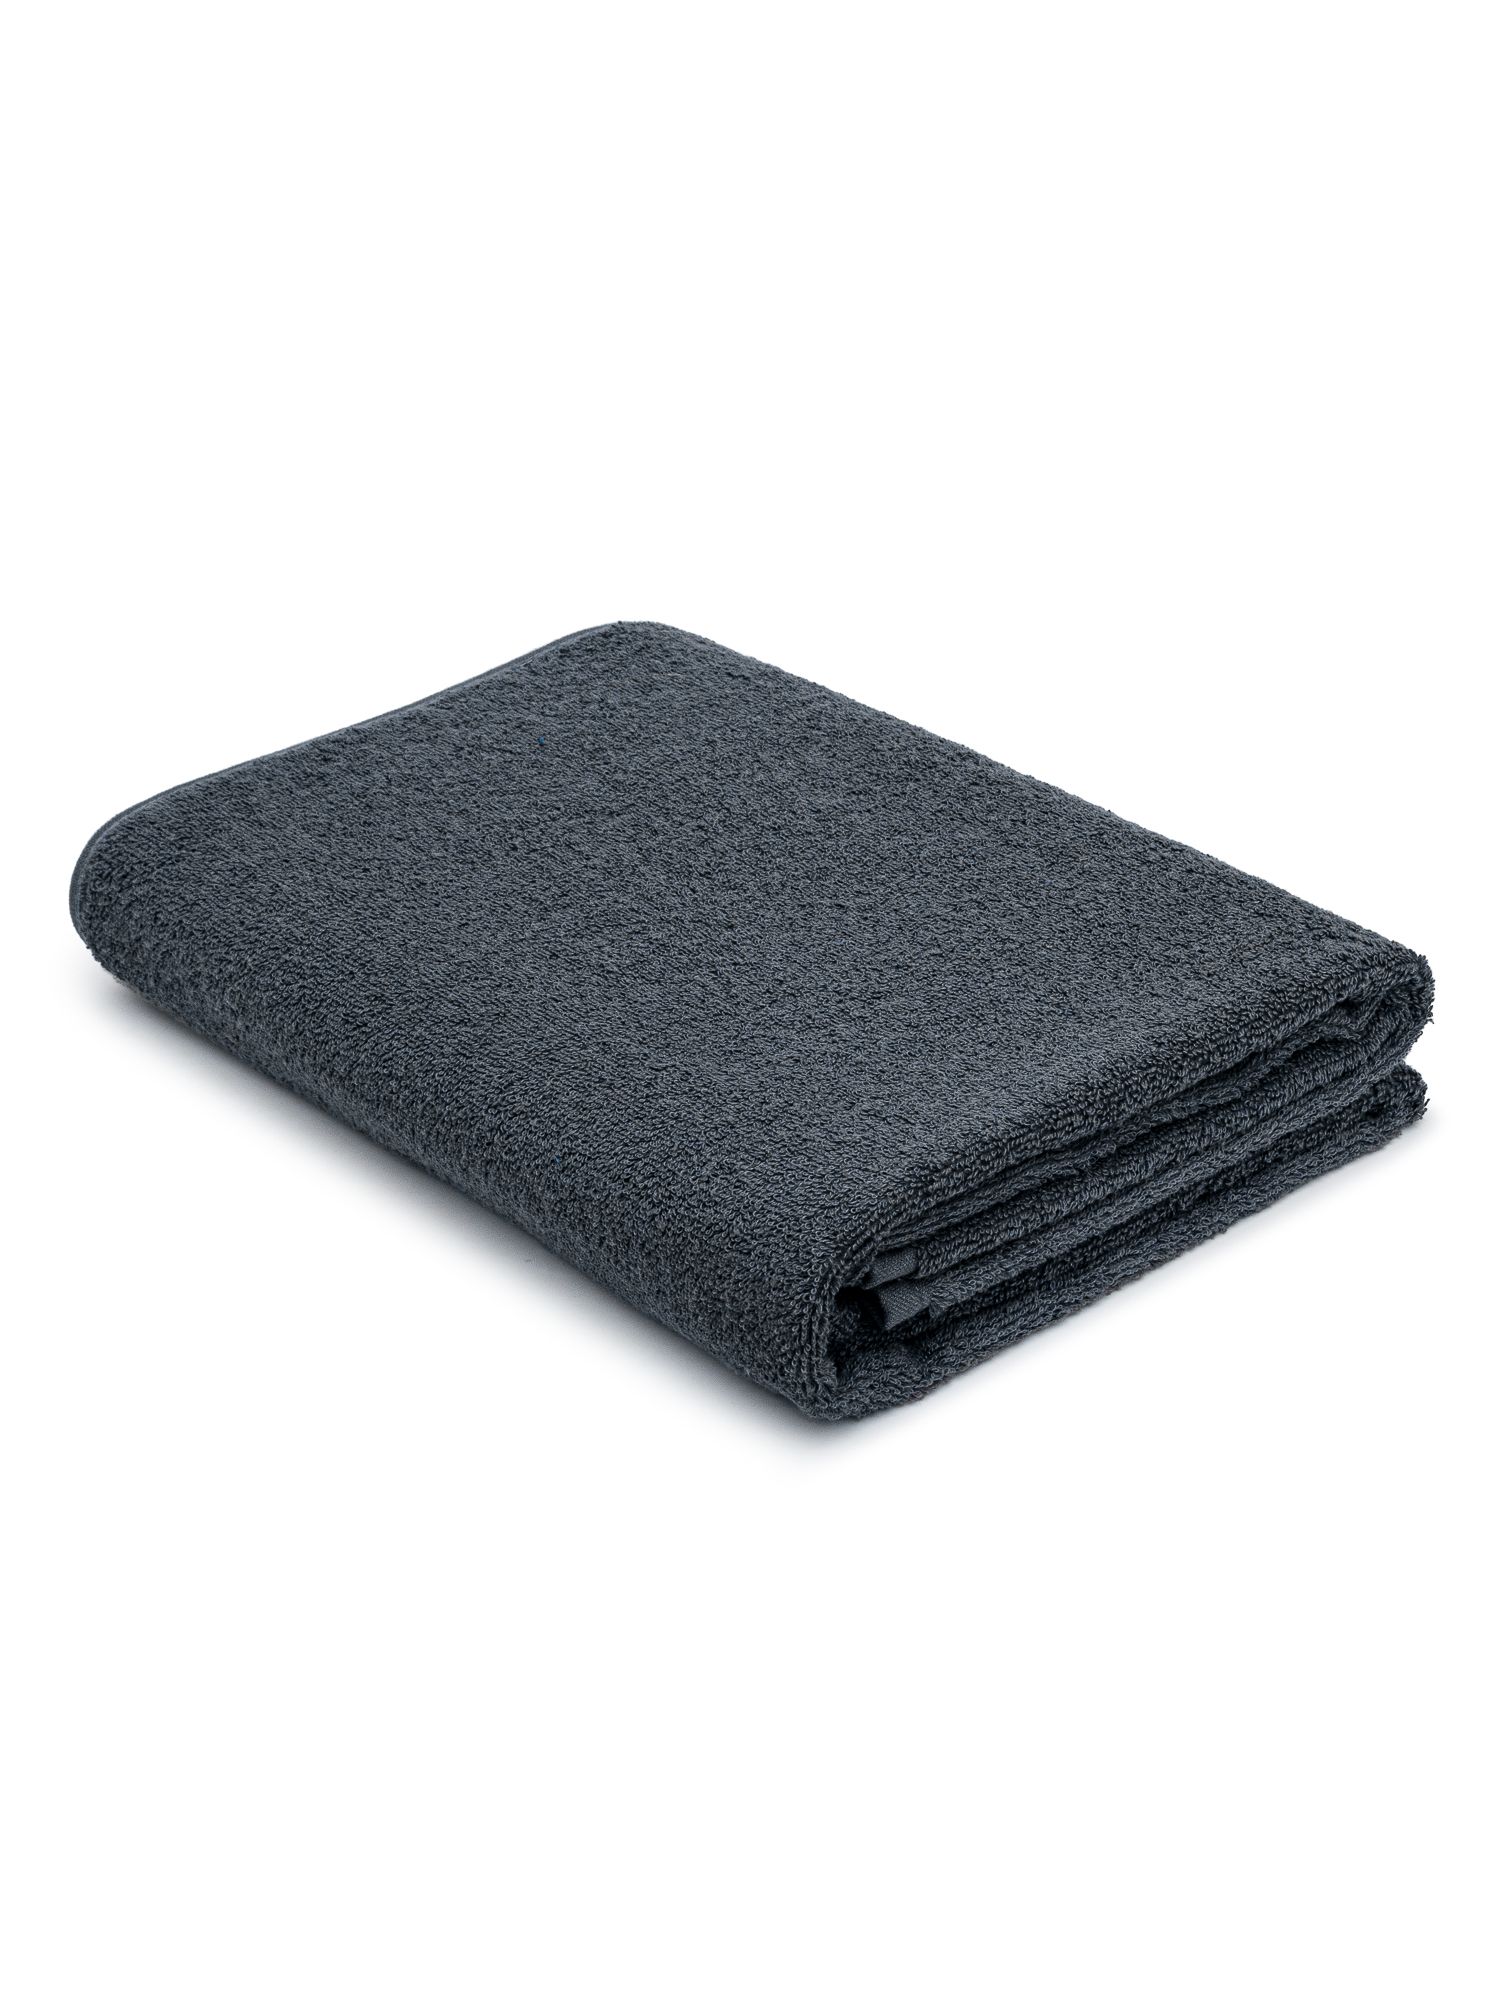 Махровое полотенце 70х140 банное TCStyle серого цвета 1 шт. 470 гр/м2